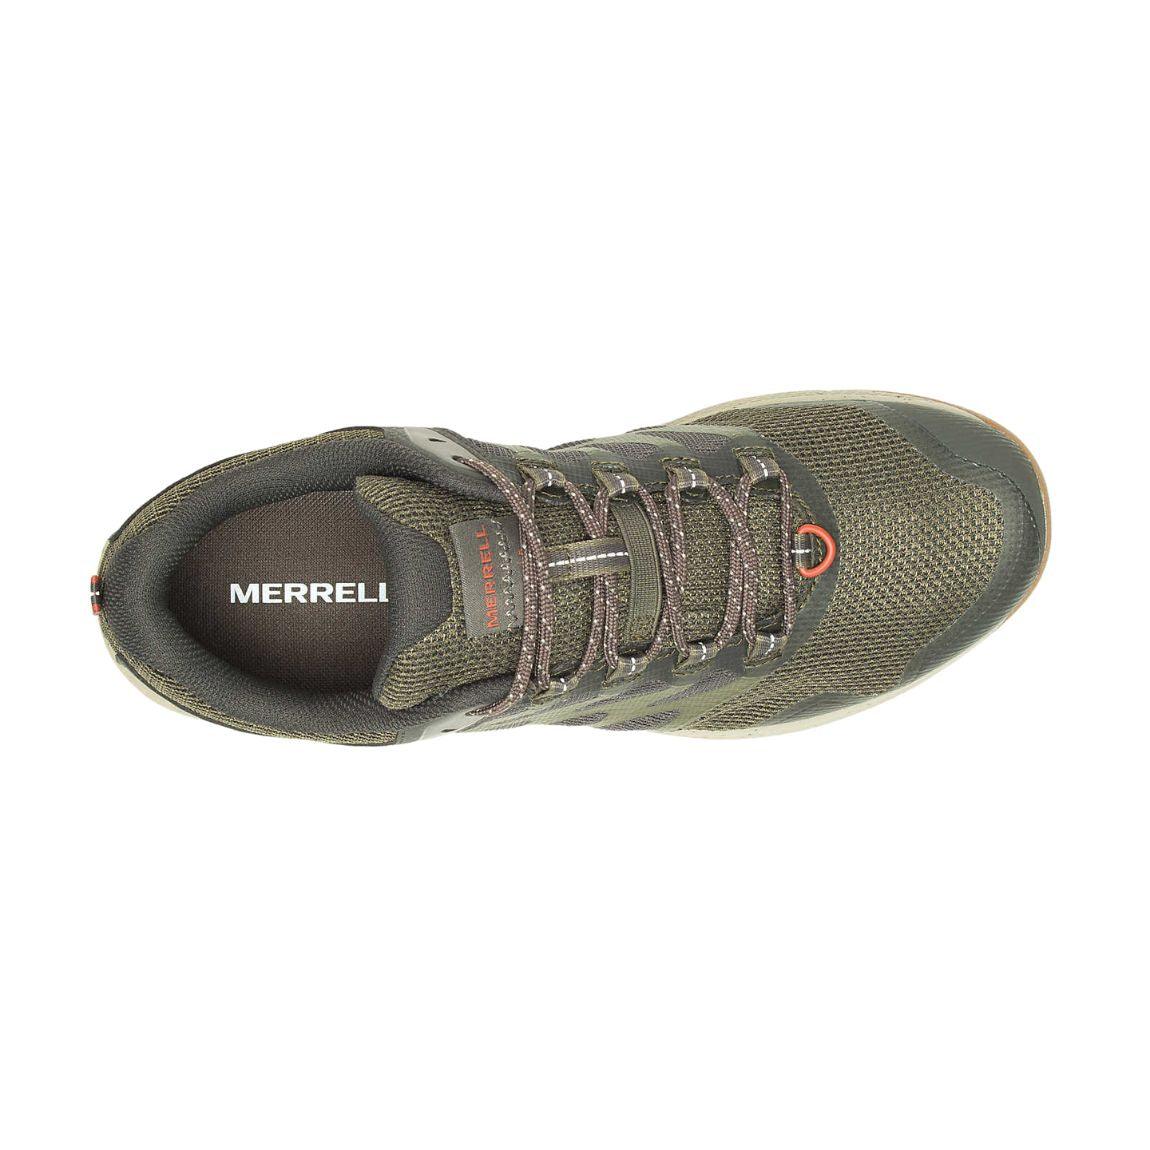 Merrell Nova 3 Hiking Shoes - Men